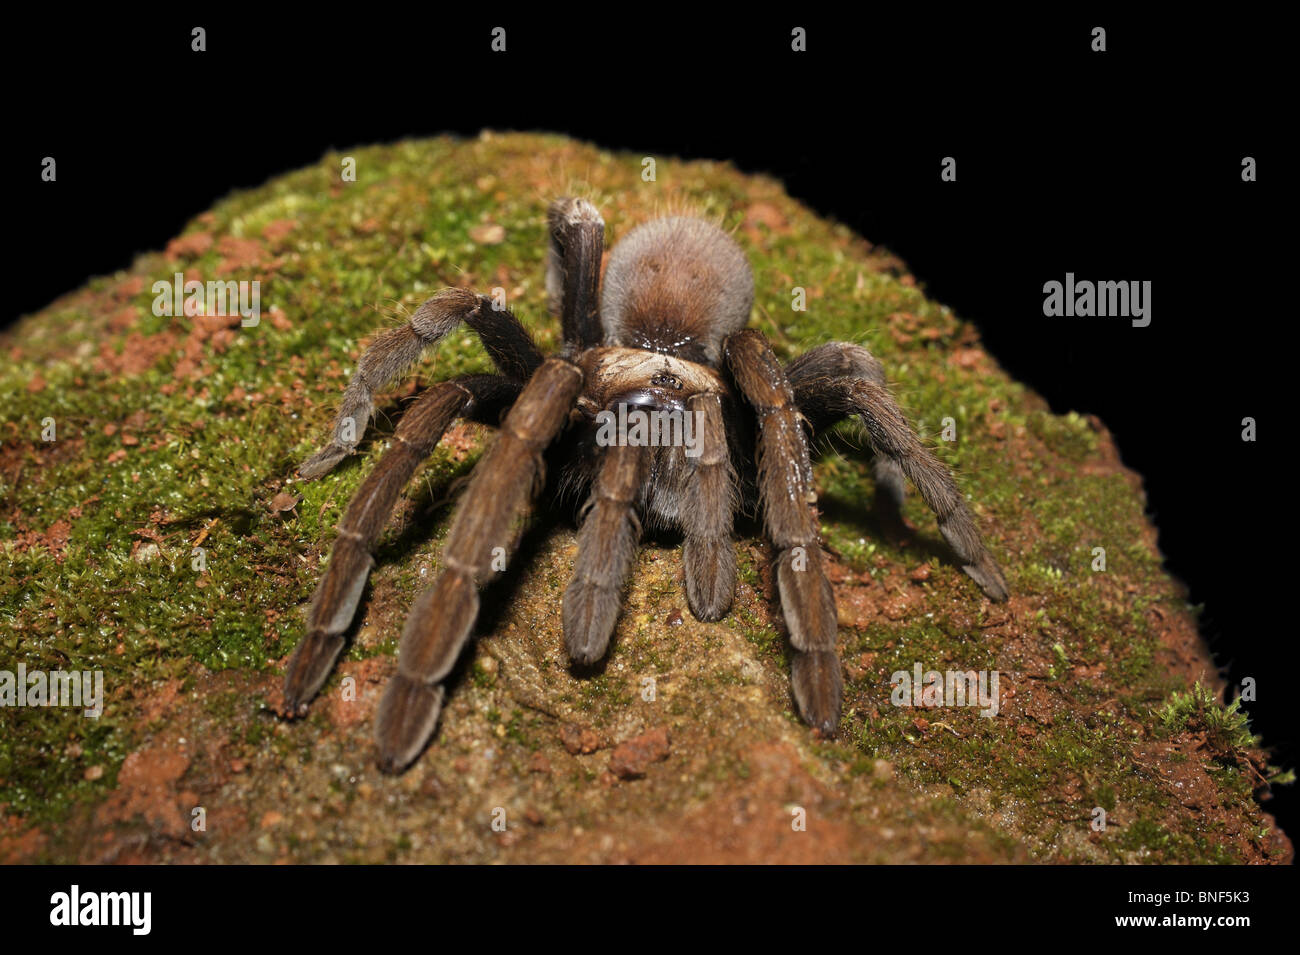 TARANTULA  hairy, large spiders belonging to family Theraphosidae venomous. Amboli Maharashtra INDIA Stock Photo